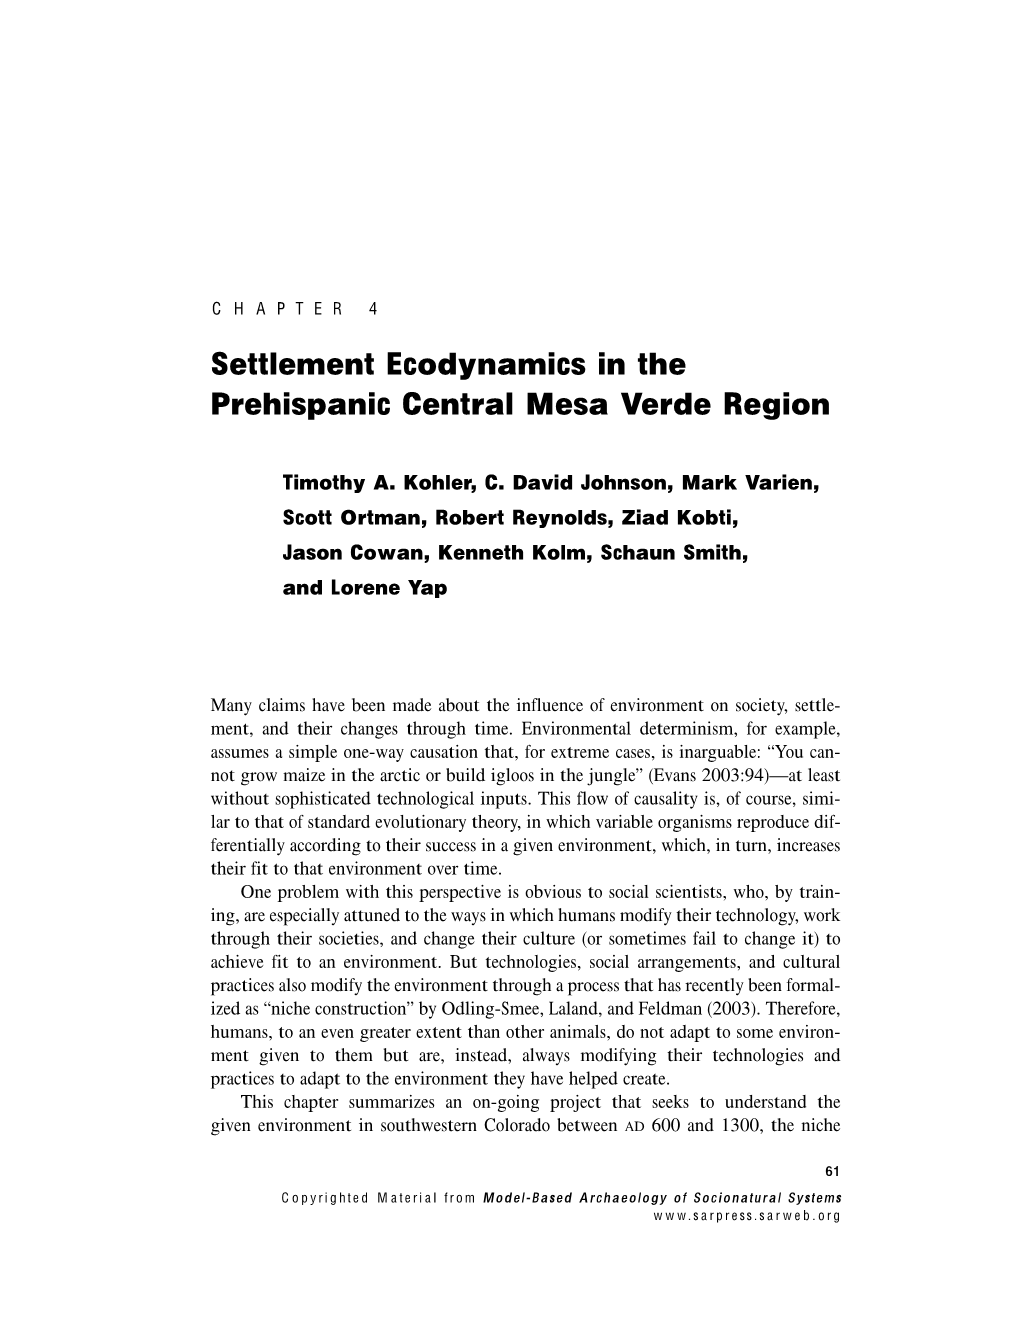 Settlement Ecodynamics in the Prehispanic Central Mesa Verde Region